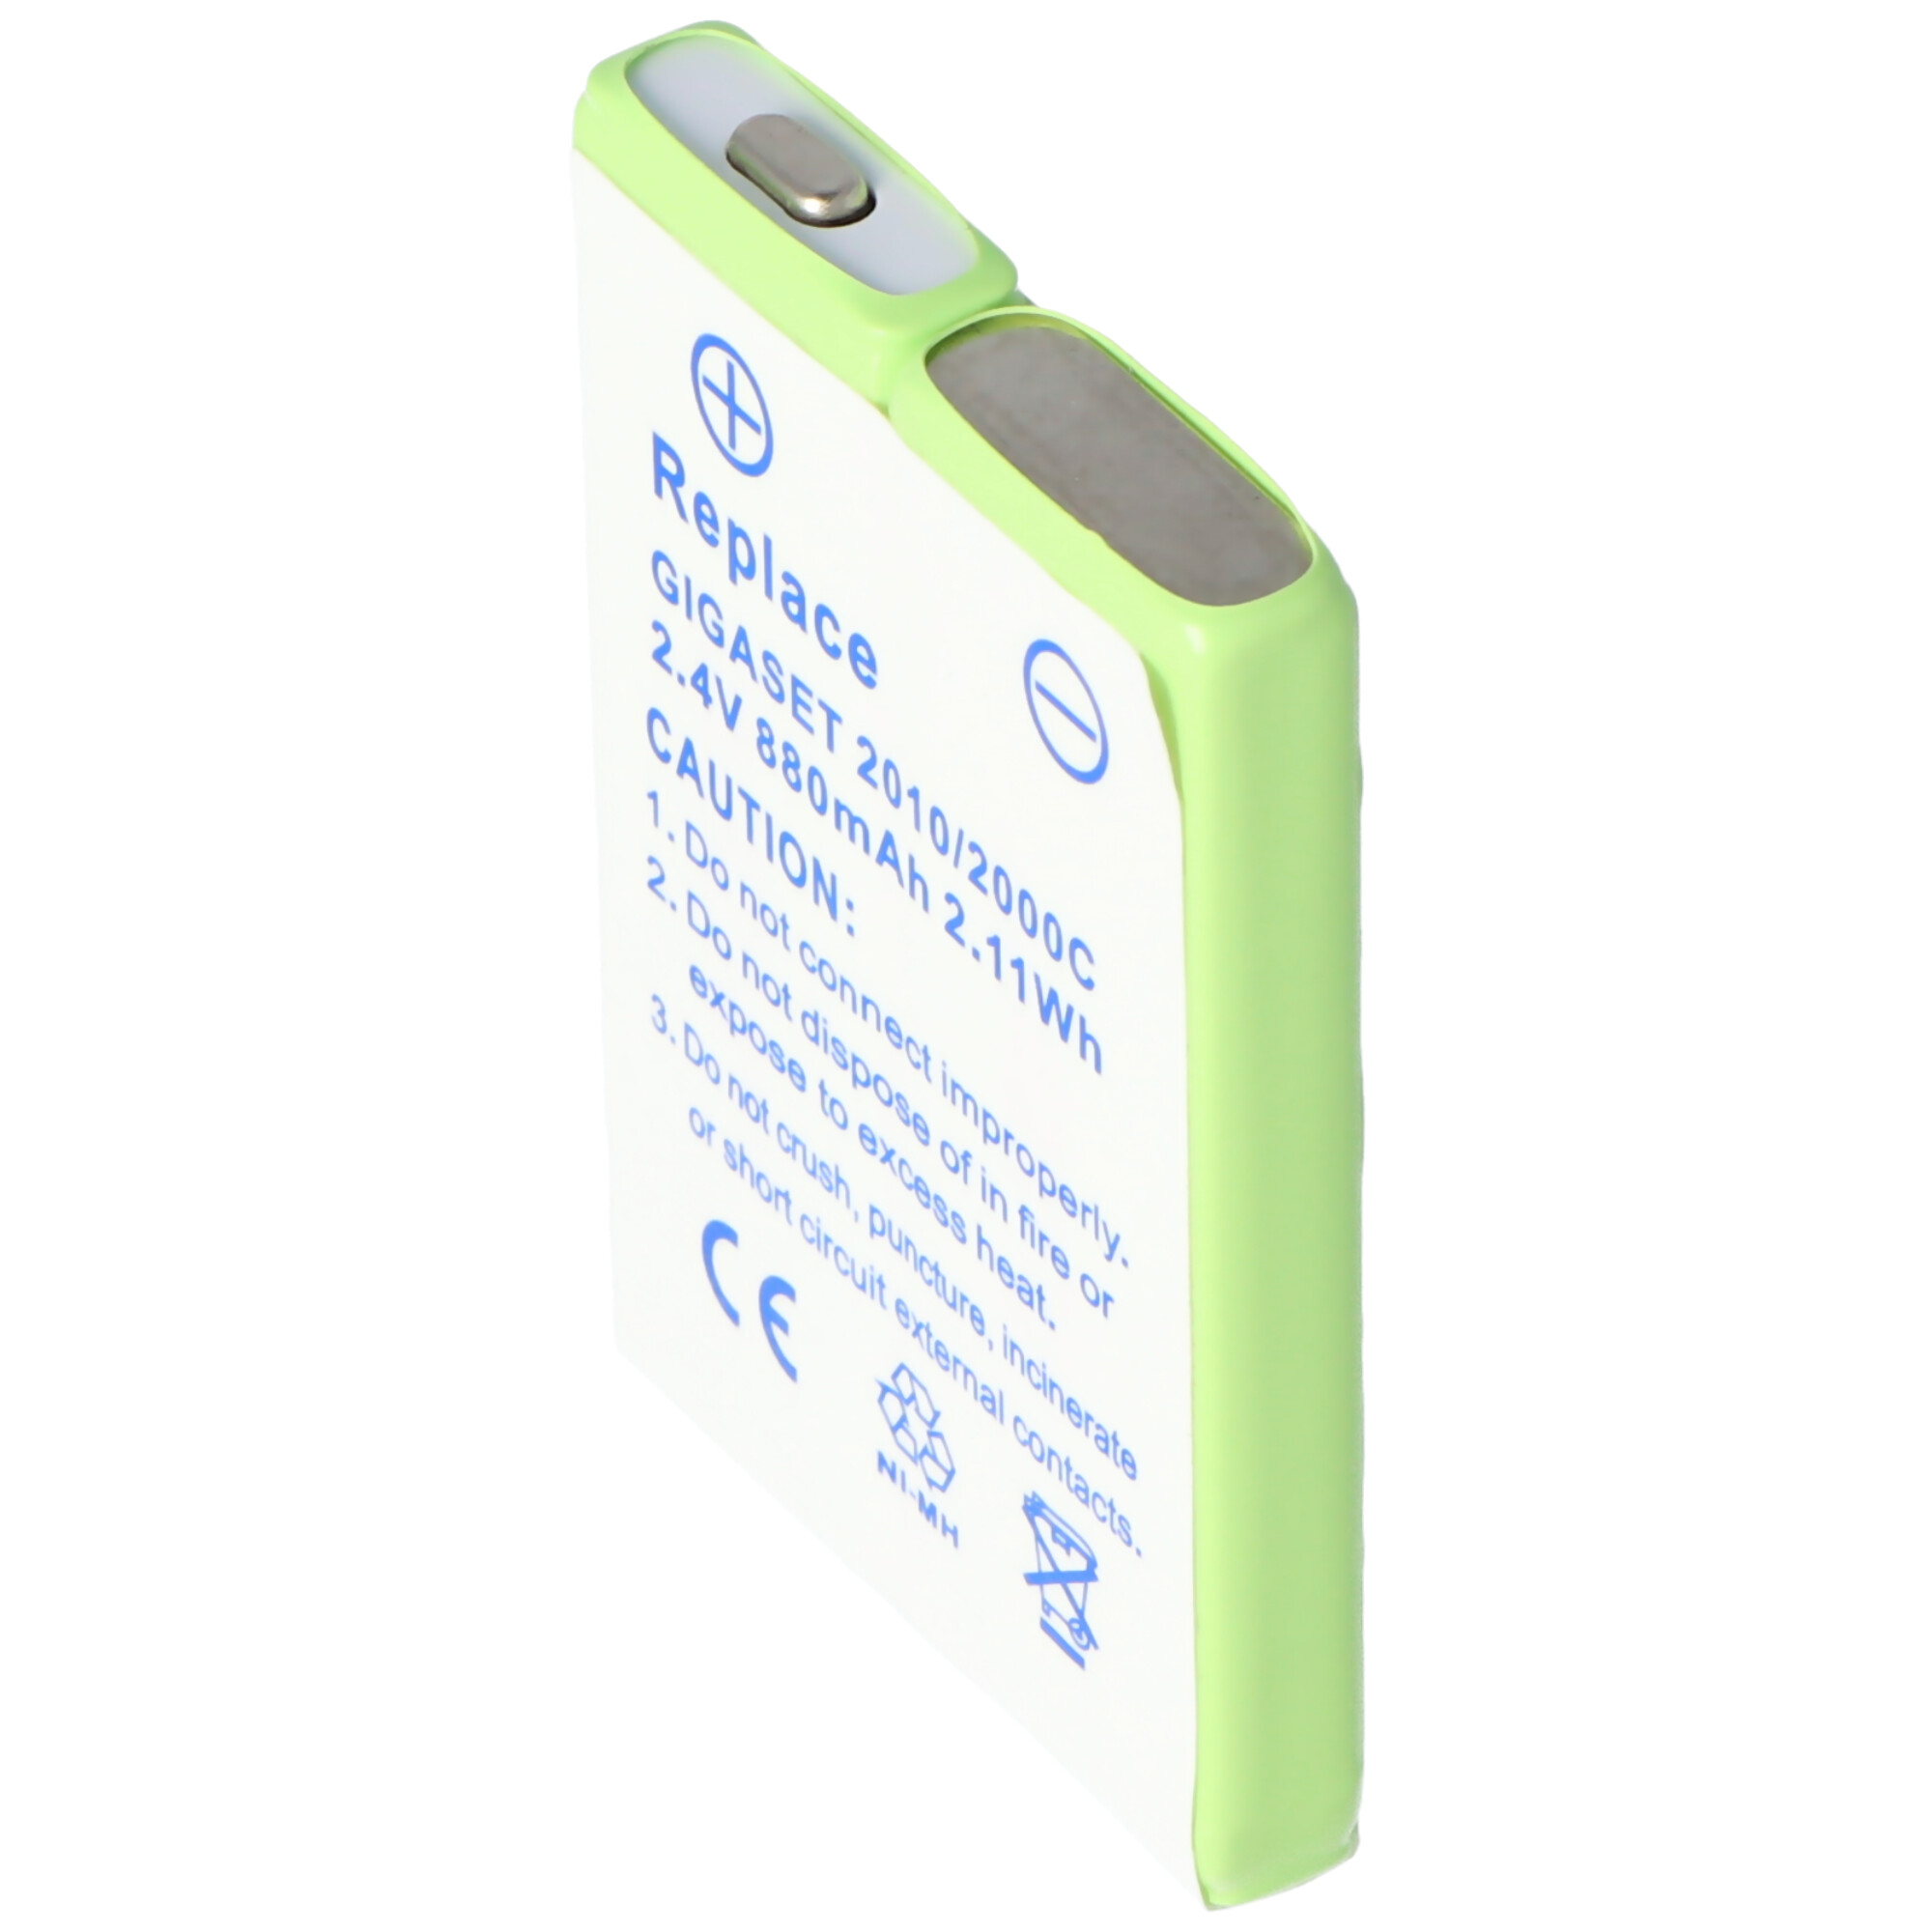 AccuCell batterie adaptéee pour Siemens Gigaset 2011 Pocket